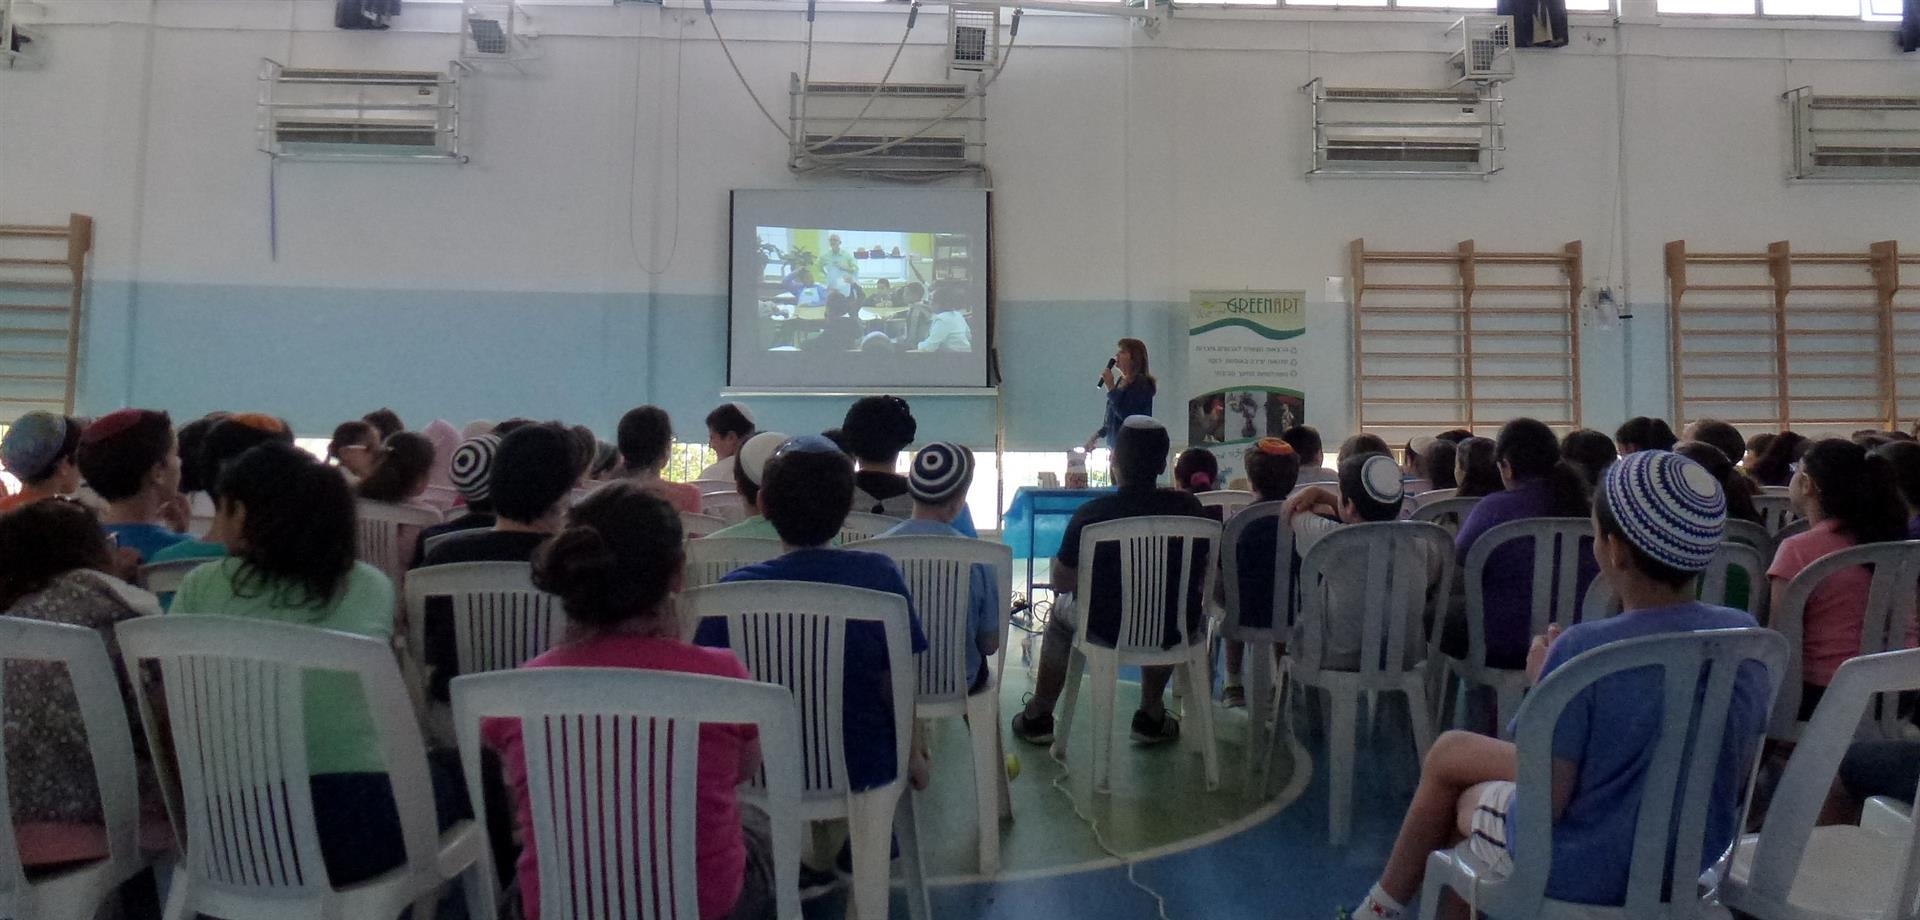 הרצאות לתלמידי בית הספר אמונים בגבעתיים בתחומי החינוך הסביבתי לתרבות וקיימות